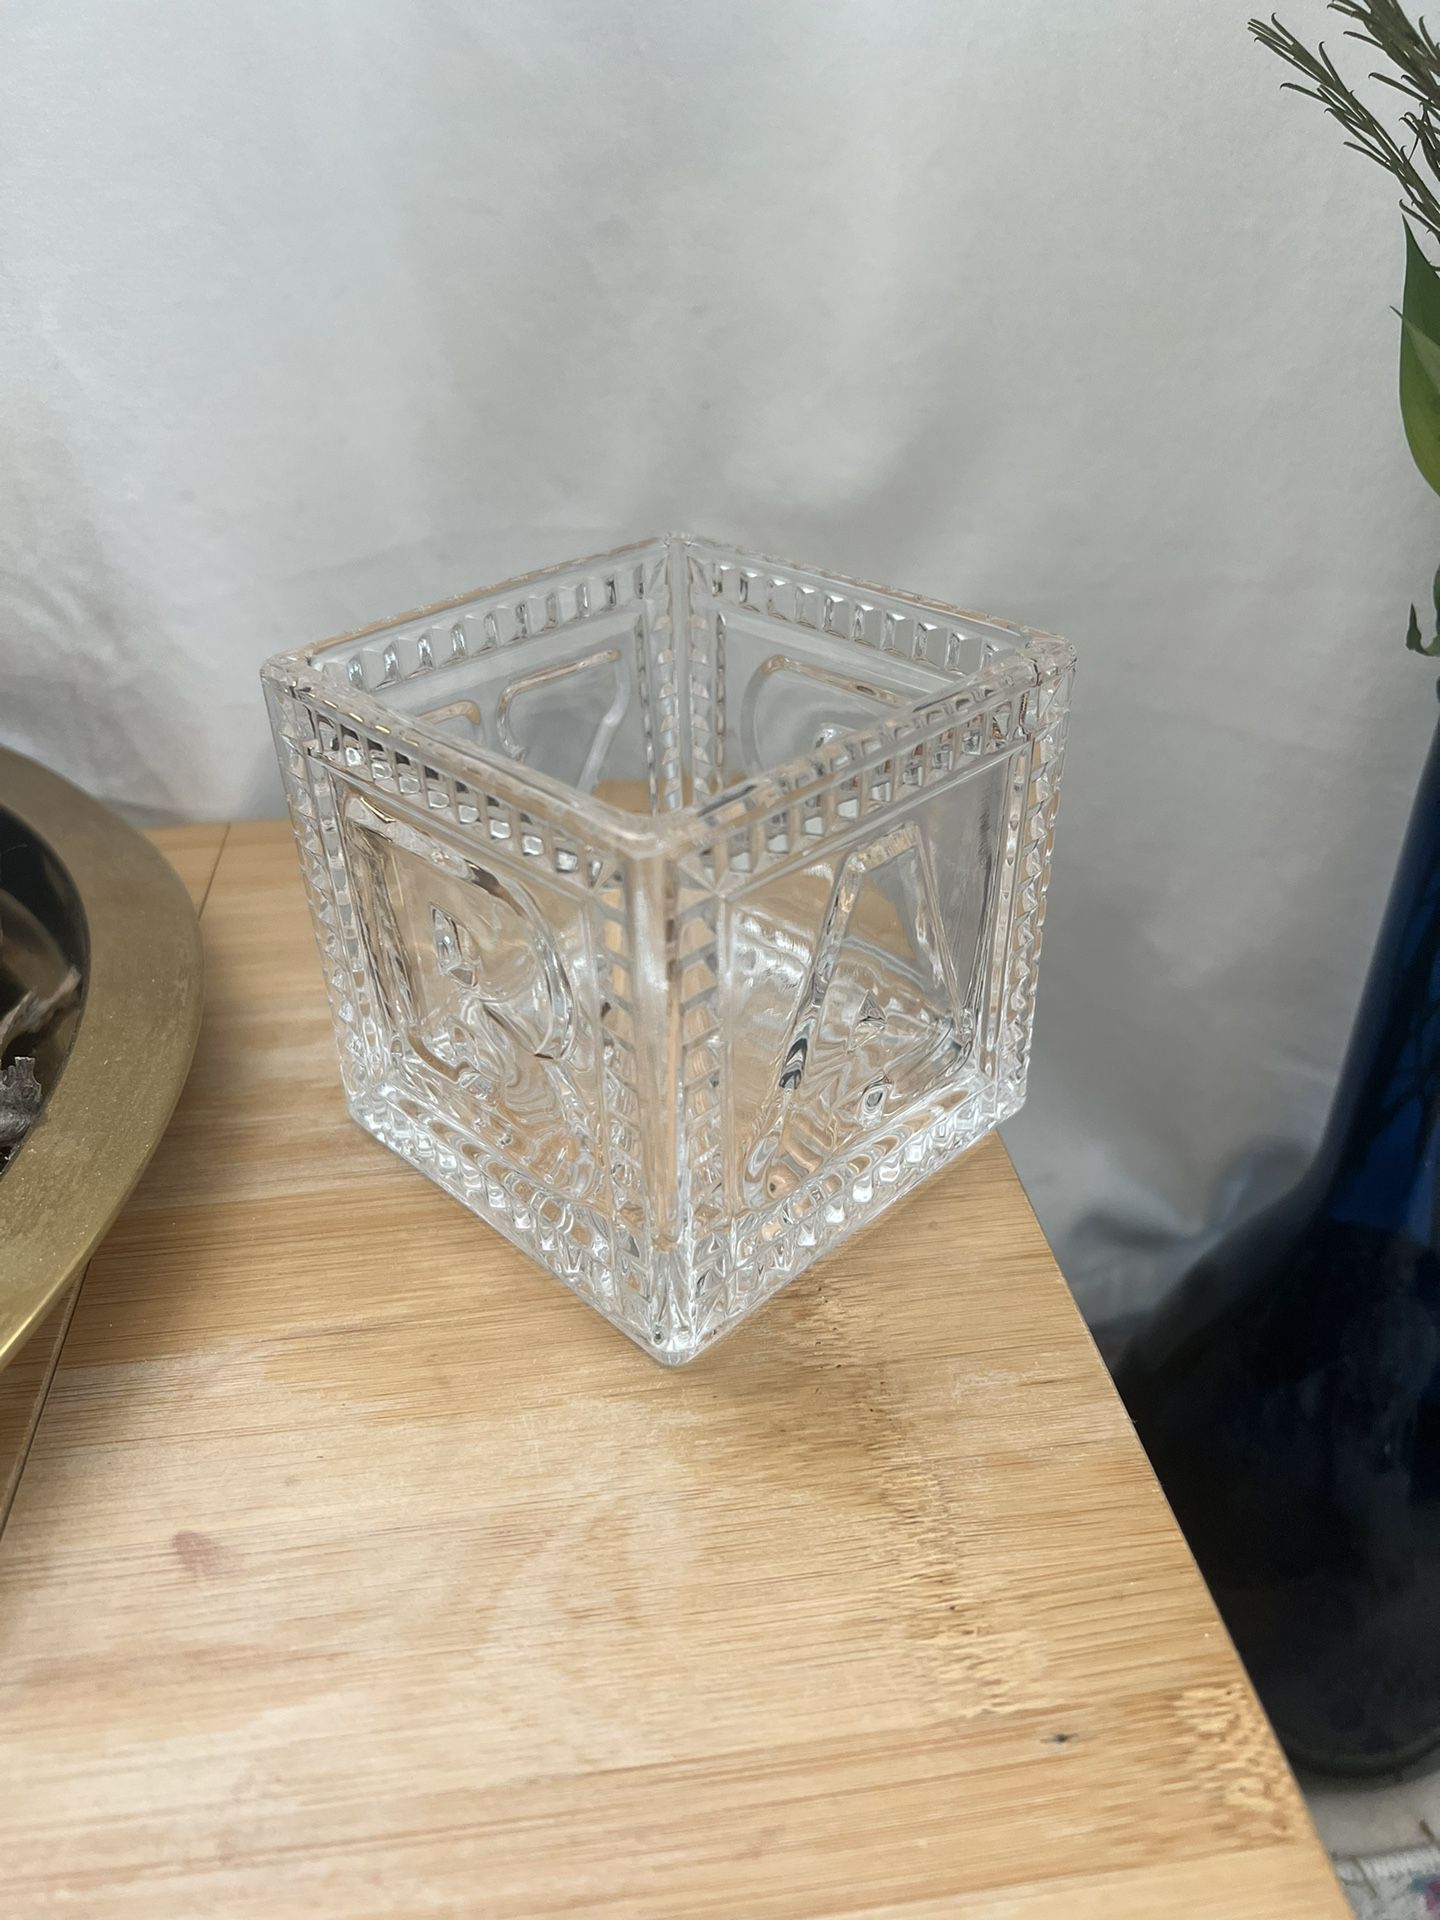 Flower Vase Cube “B” “A” “B” “Y”